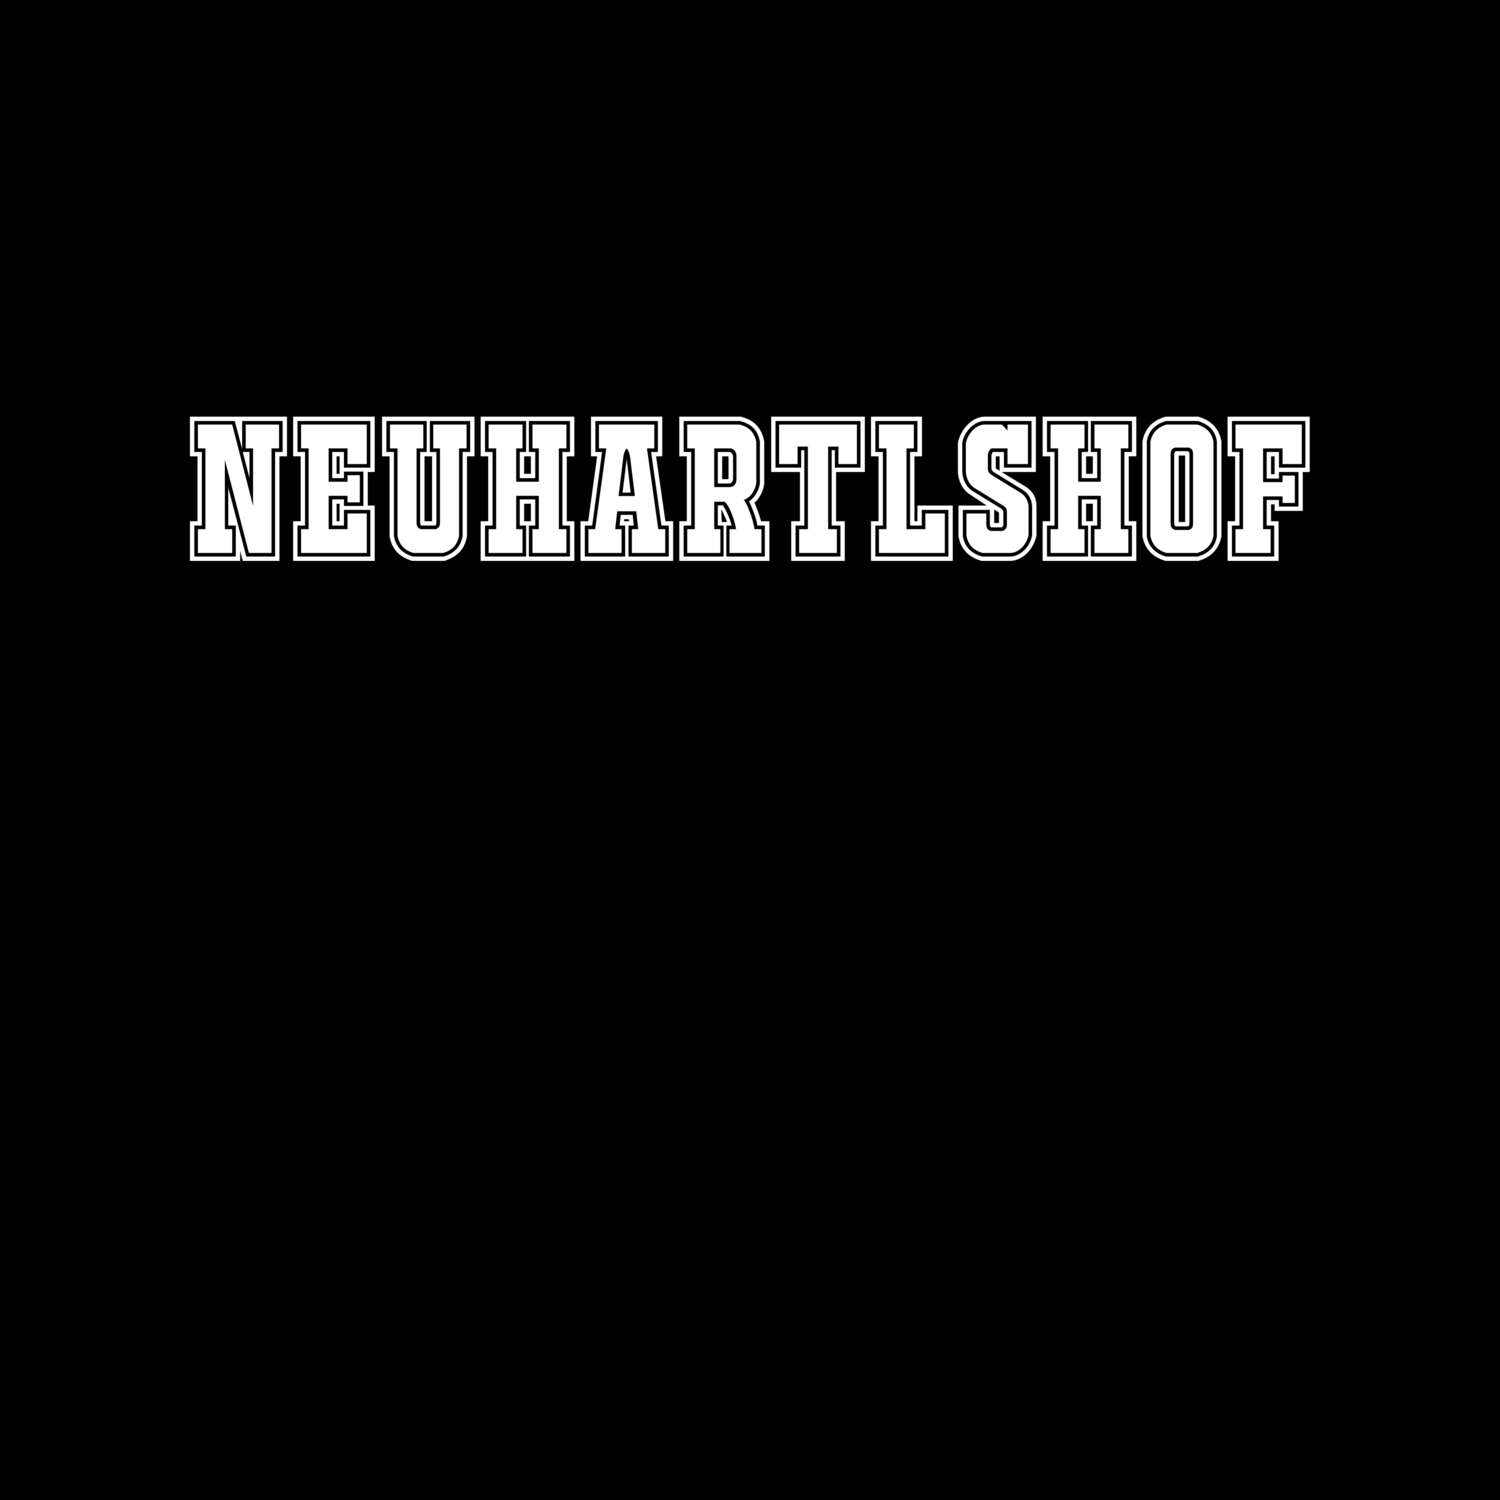 Neuhartlshof T-Shirt »Classic«